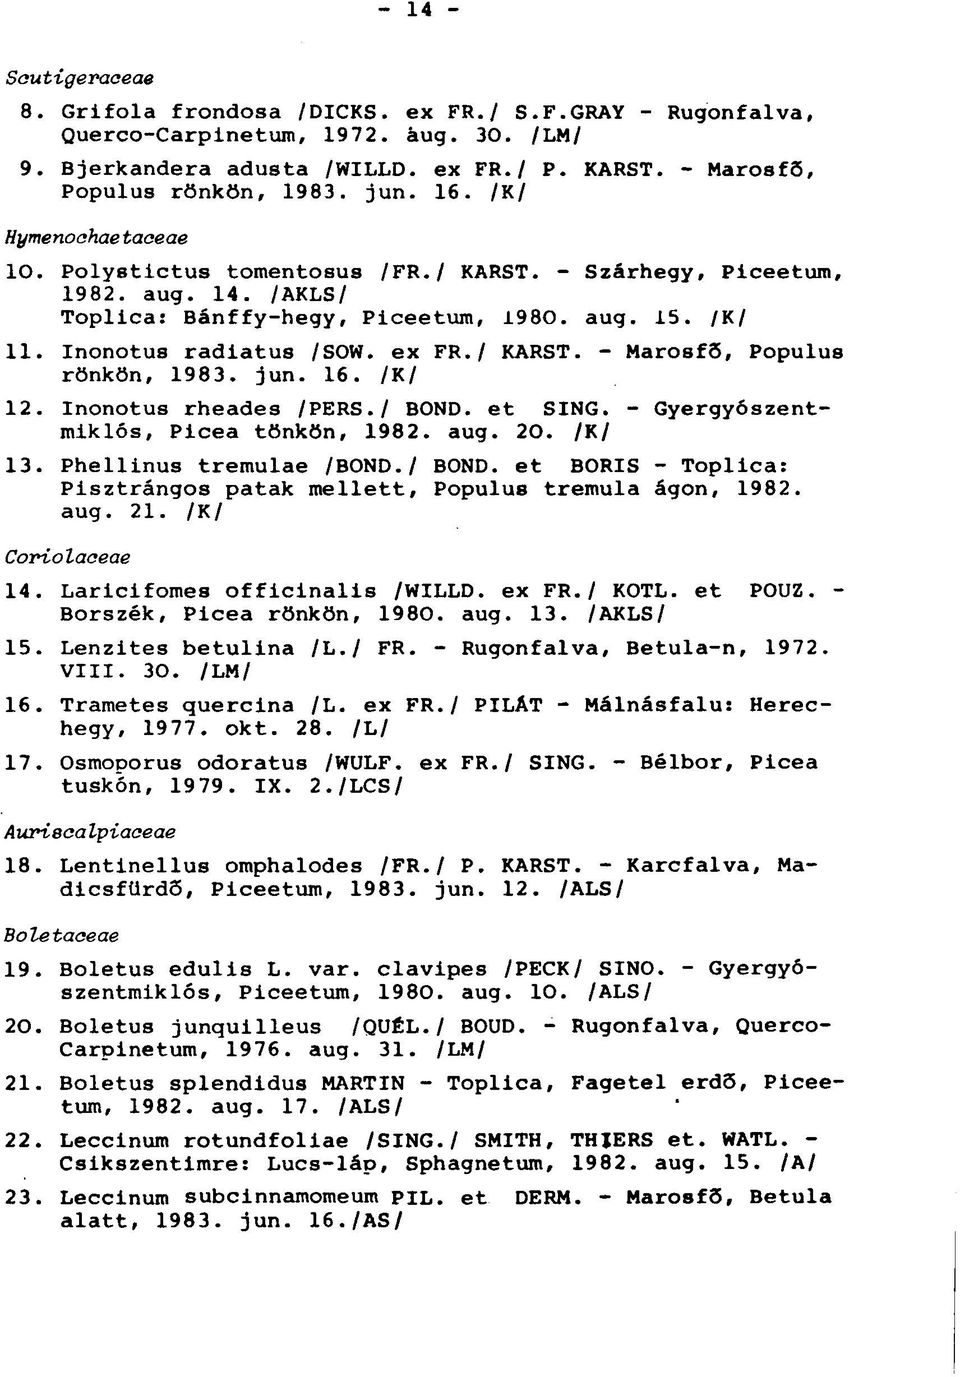 / KARST. - Marosfö, Populus rönkön, 1983. jun. 16. /K/ 12. Inonotus rheades /PERS./ BOND, et SING. - Gyergyószentmiklós, Picea tönkön, 1982. aug.. /K/ 13. Phellinus tremulae /BOND.